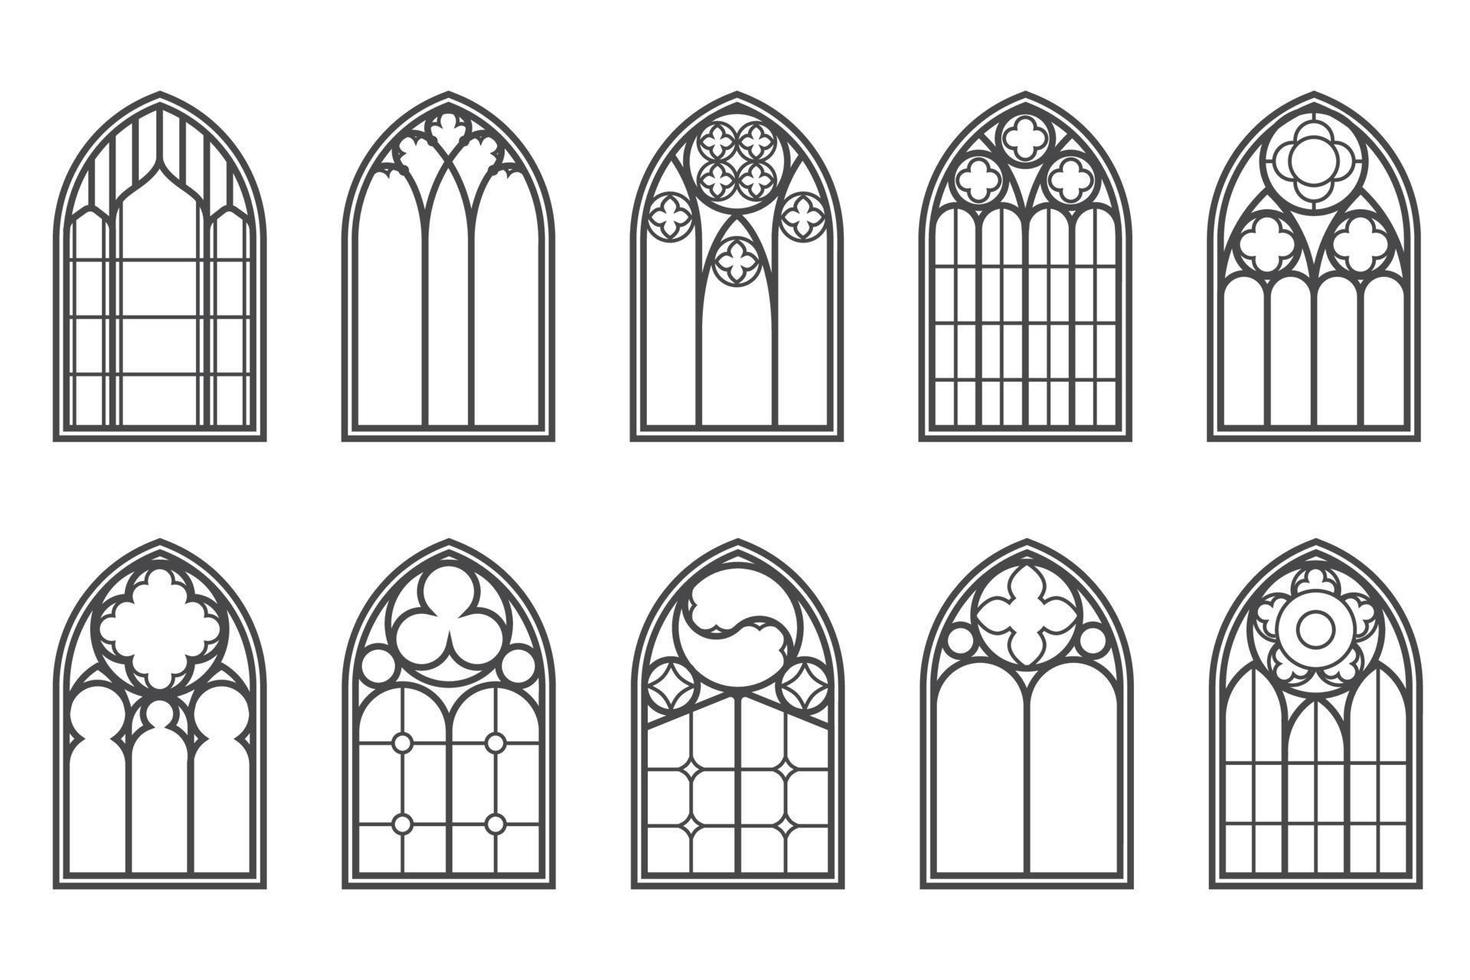 kerk middeleeuwse ramen set. oude gotische stijl architectuurelementen. vector overzicht illustratie op witte achtergrond.